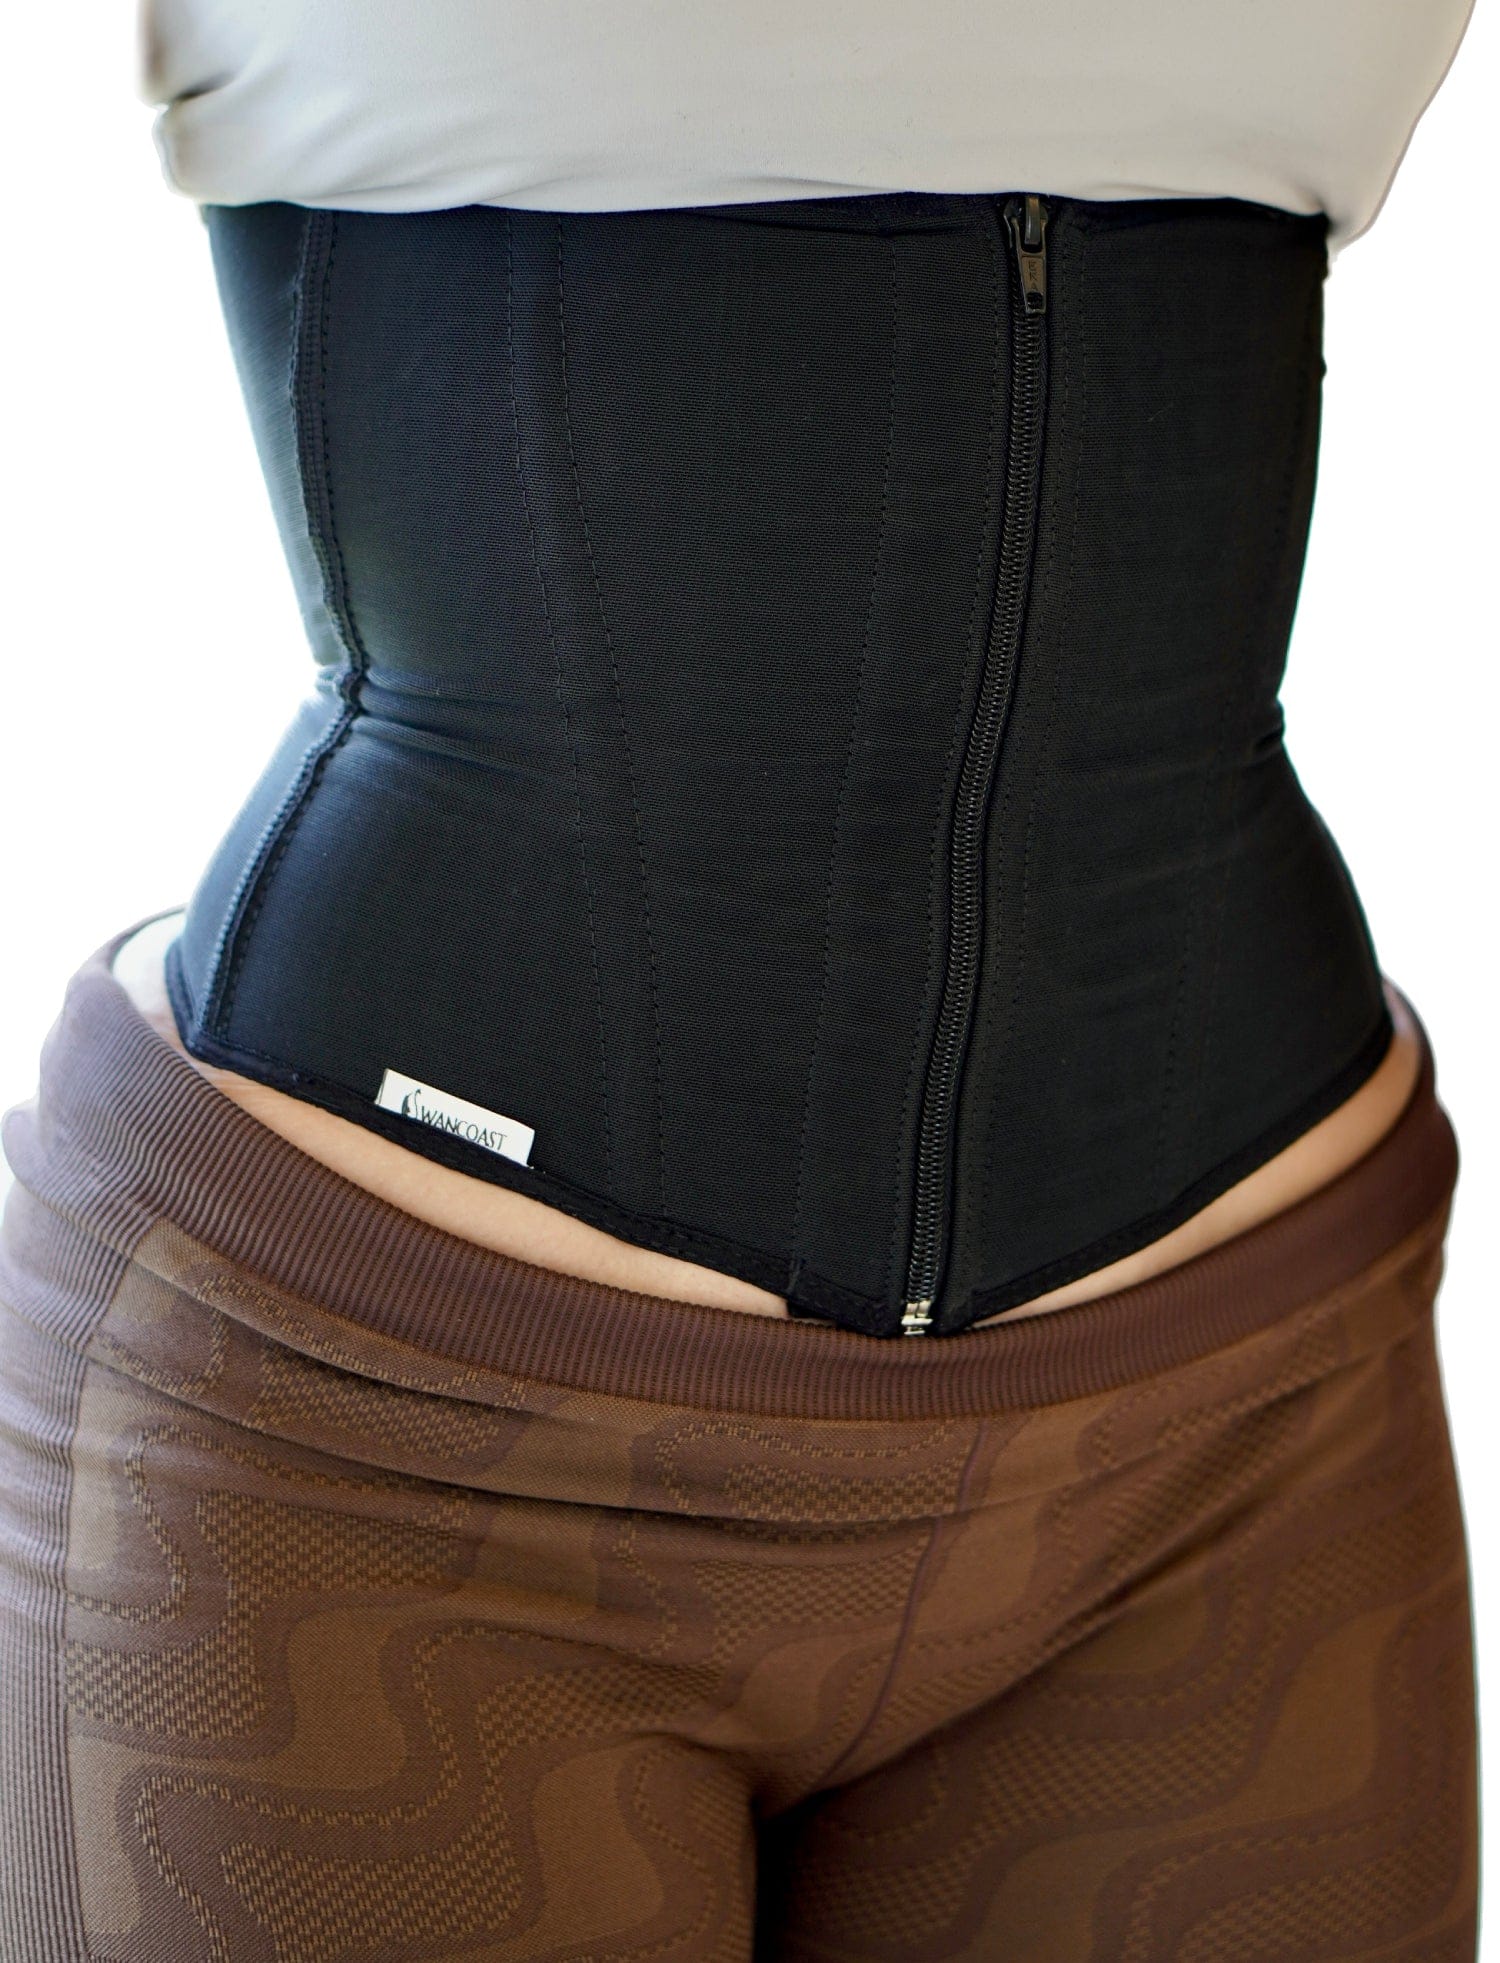 Zipper Waist Cincher for Women  Enhance Your Figure with Comfort